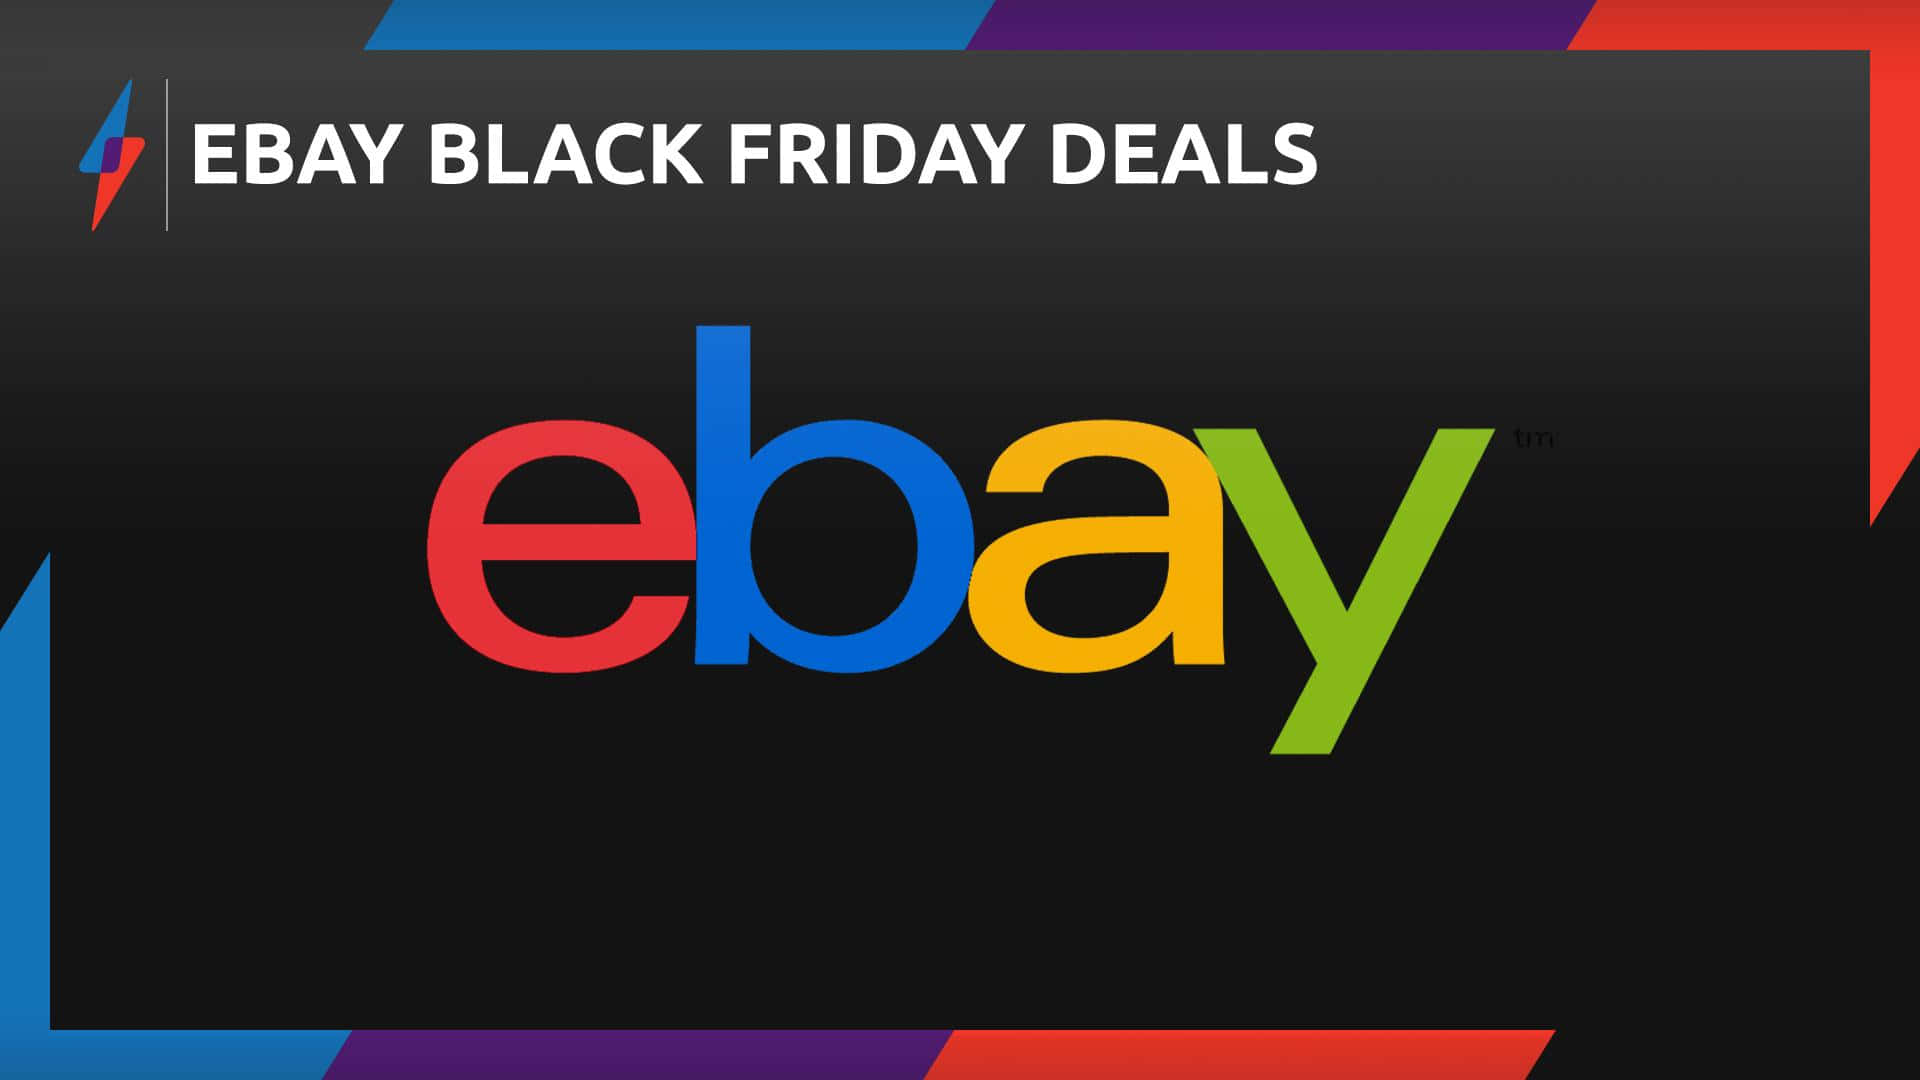 Ebay Black Friday Deals 2019